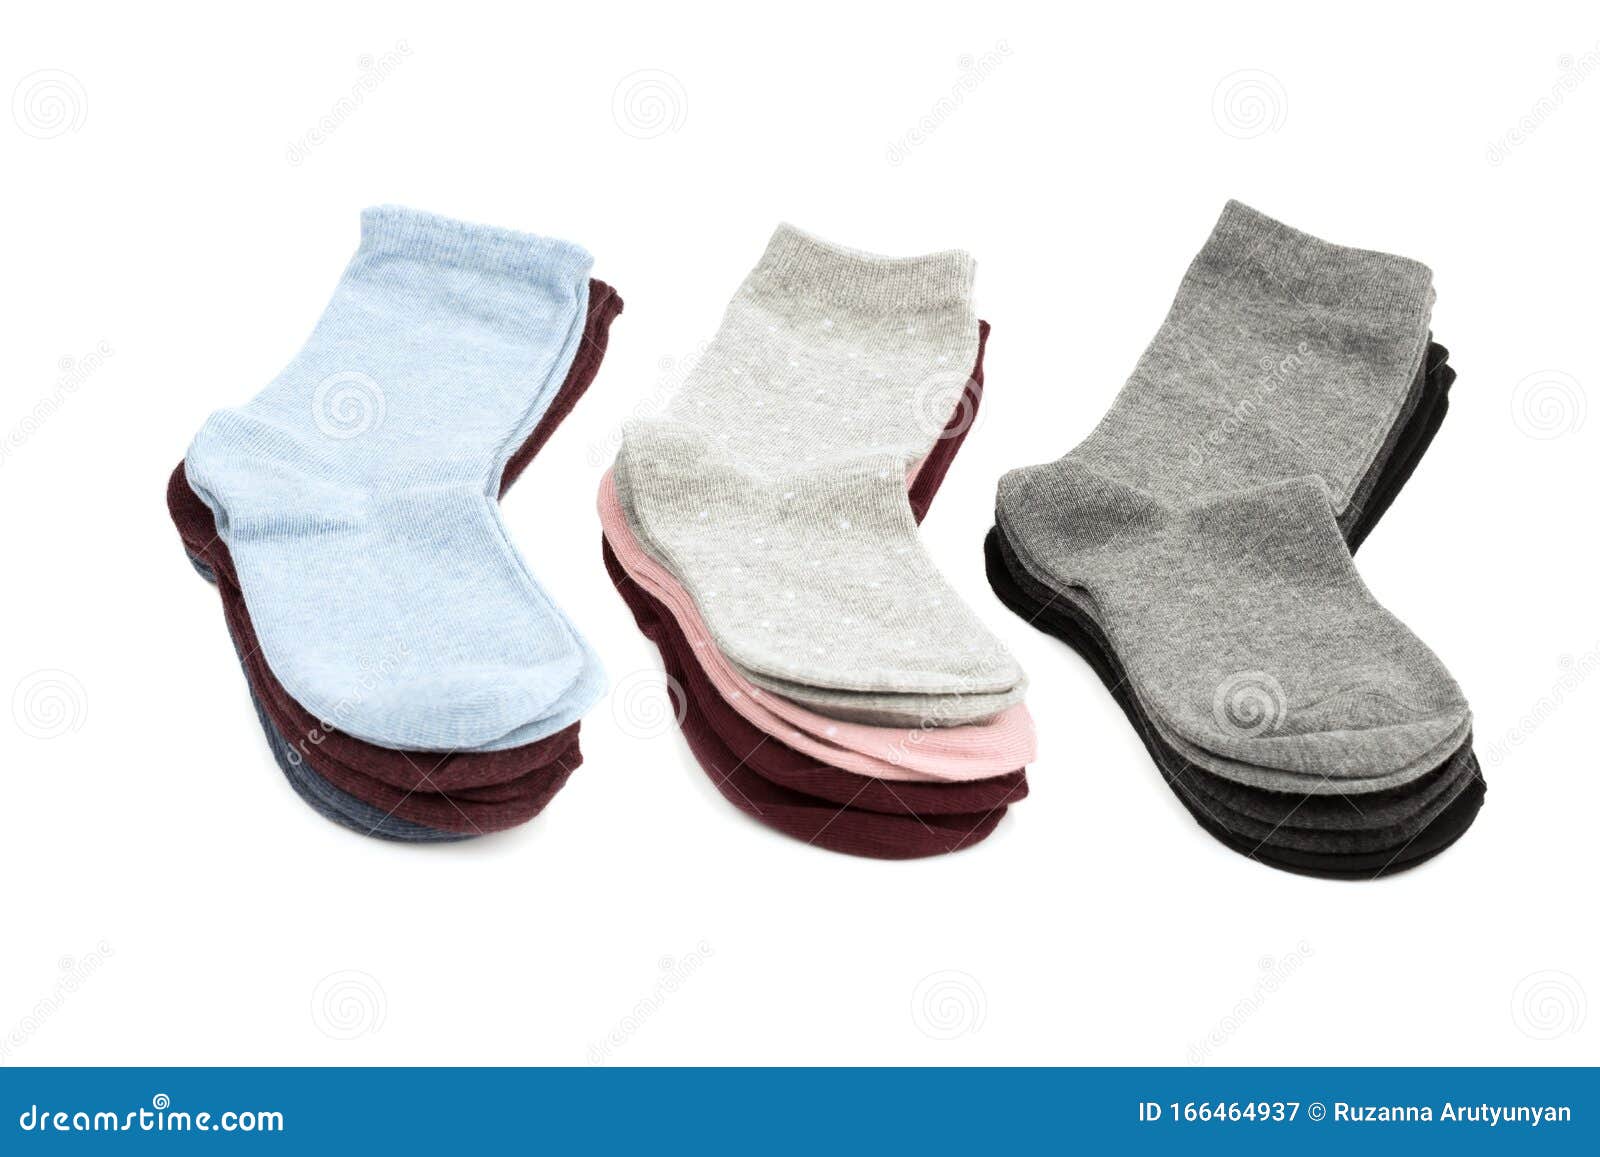 Relámpago Chimenea Intentar Pilas de calcetines imagen de archivo. Imagen de rosa - 166464937